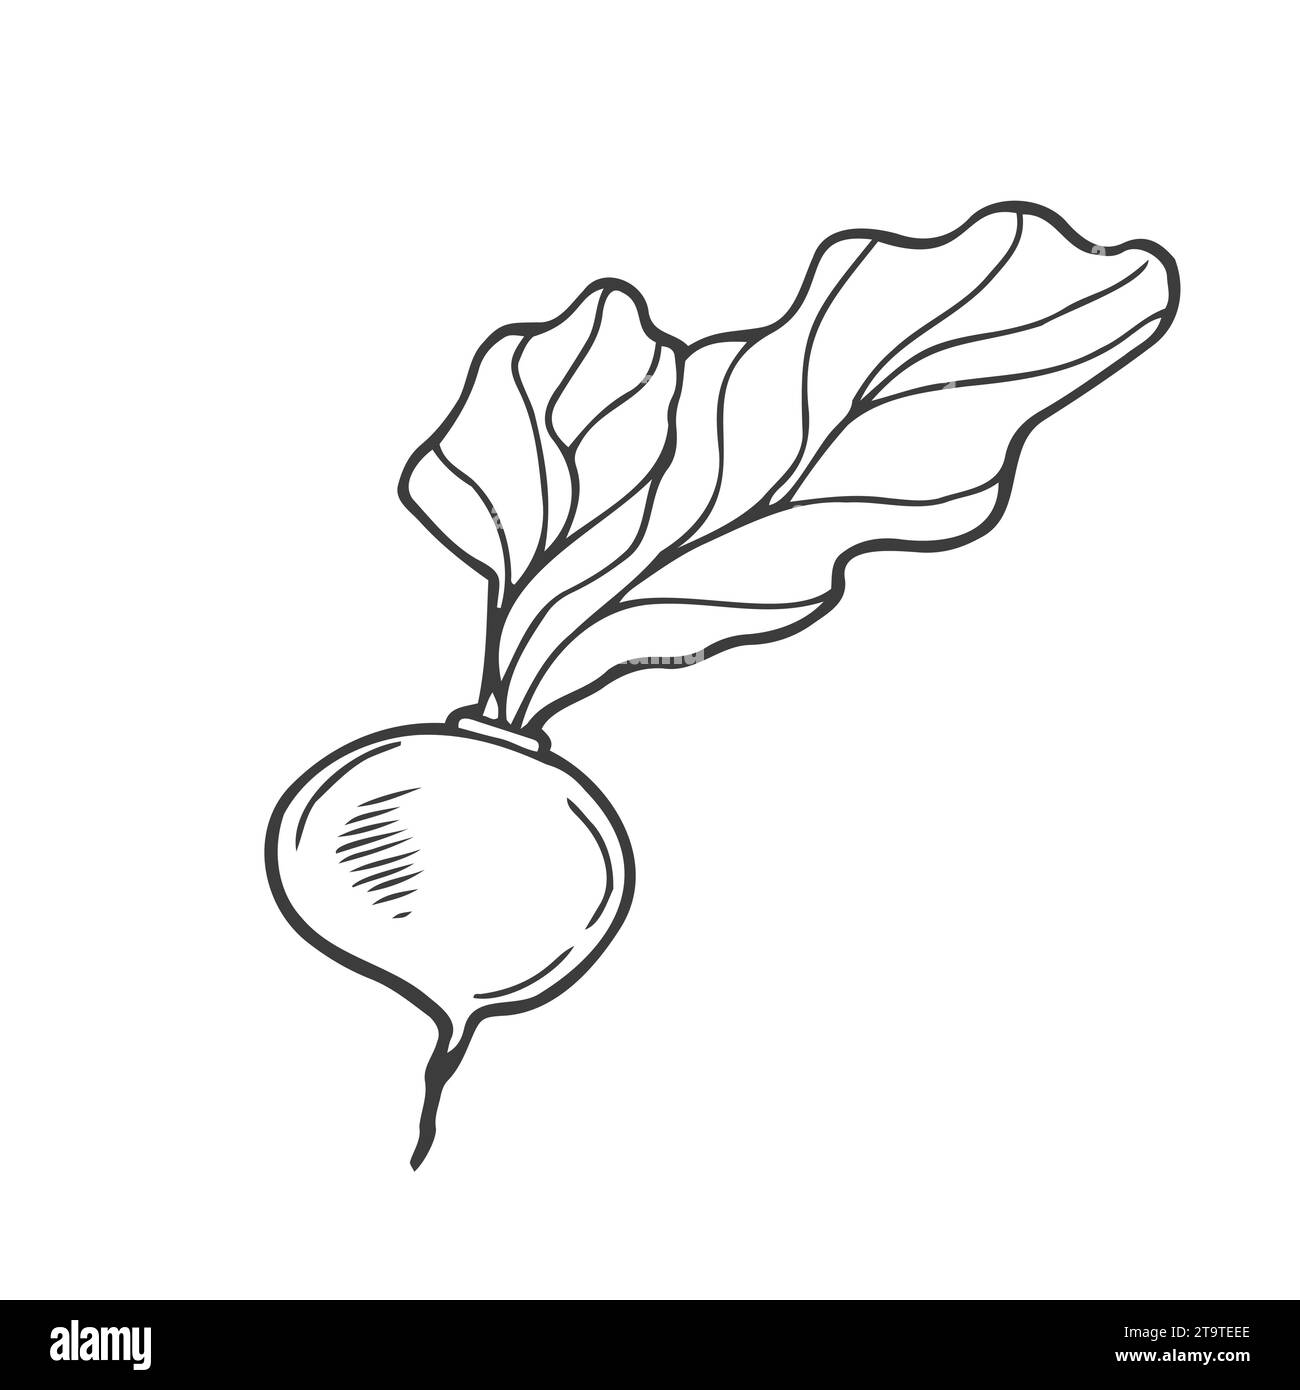 Vecteur isolé de ligne noire incolore betterave, radis, navets, croquis simple de légume racine Illustration de Vecteur